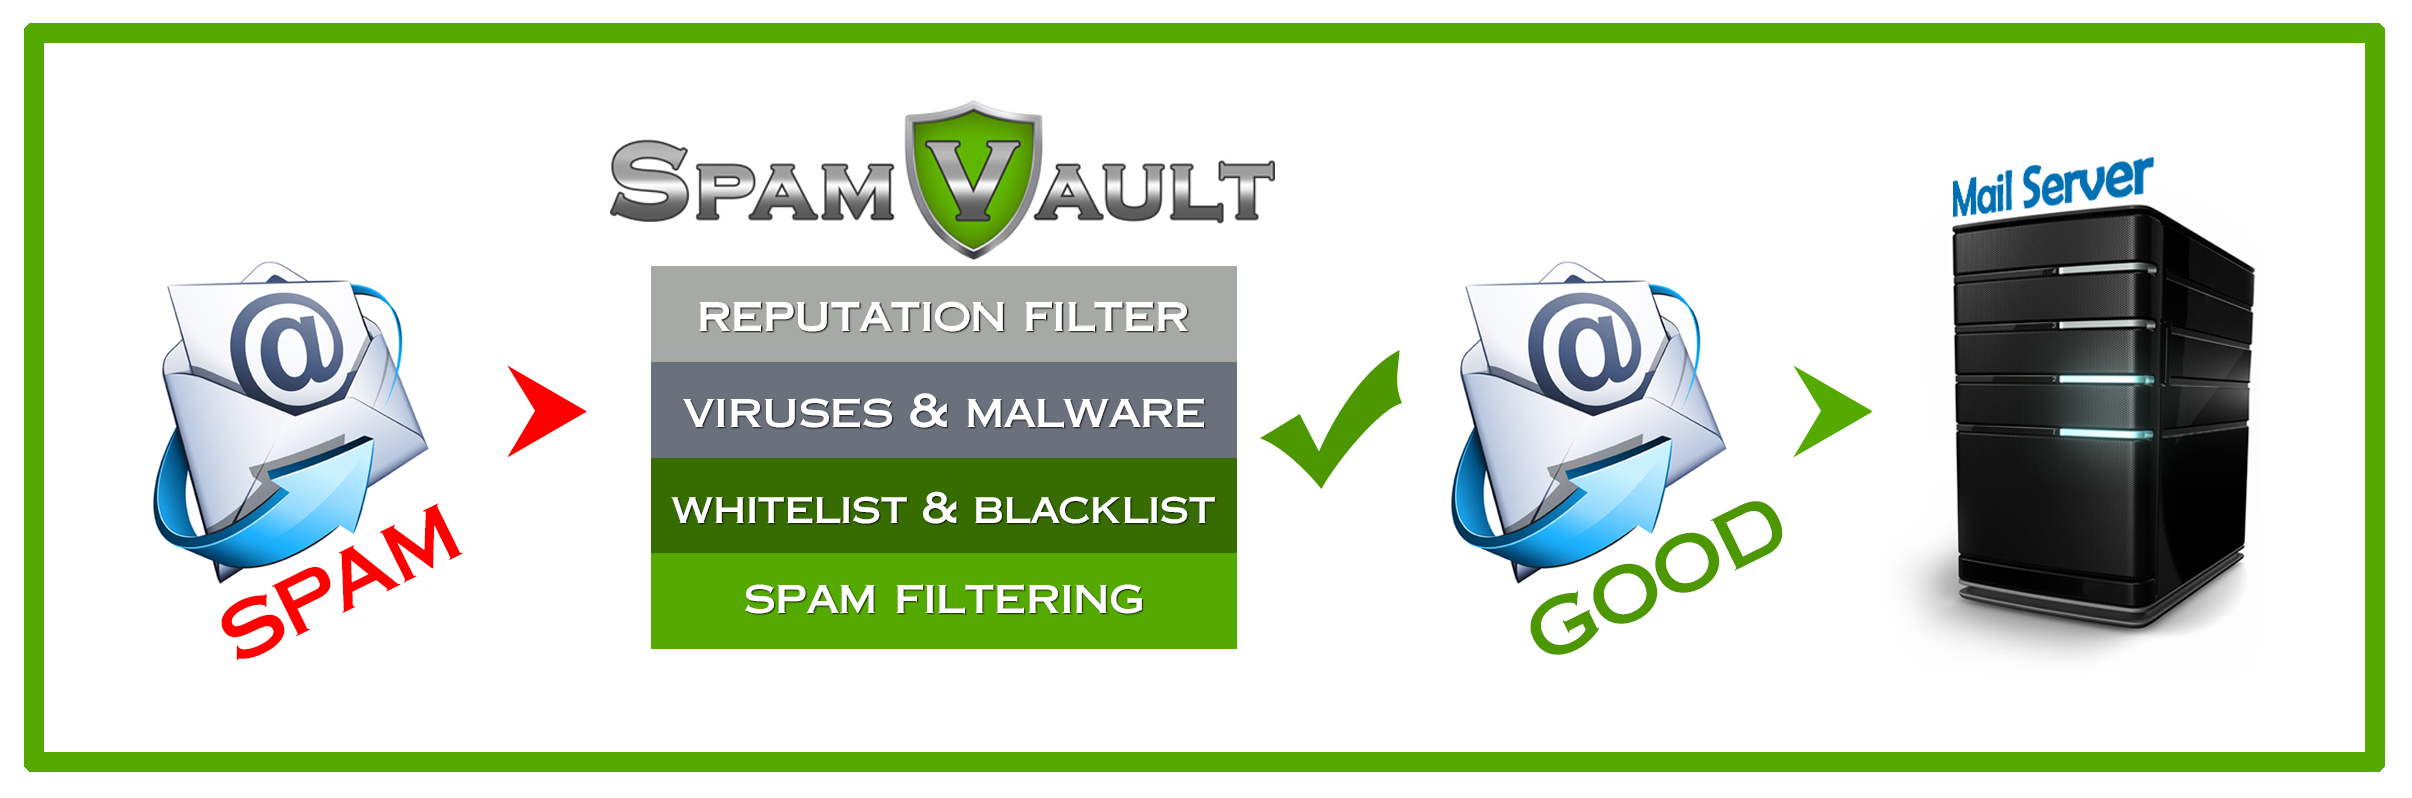 SpamVault Spam Filtering Service